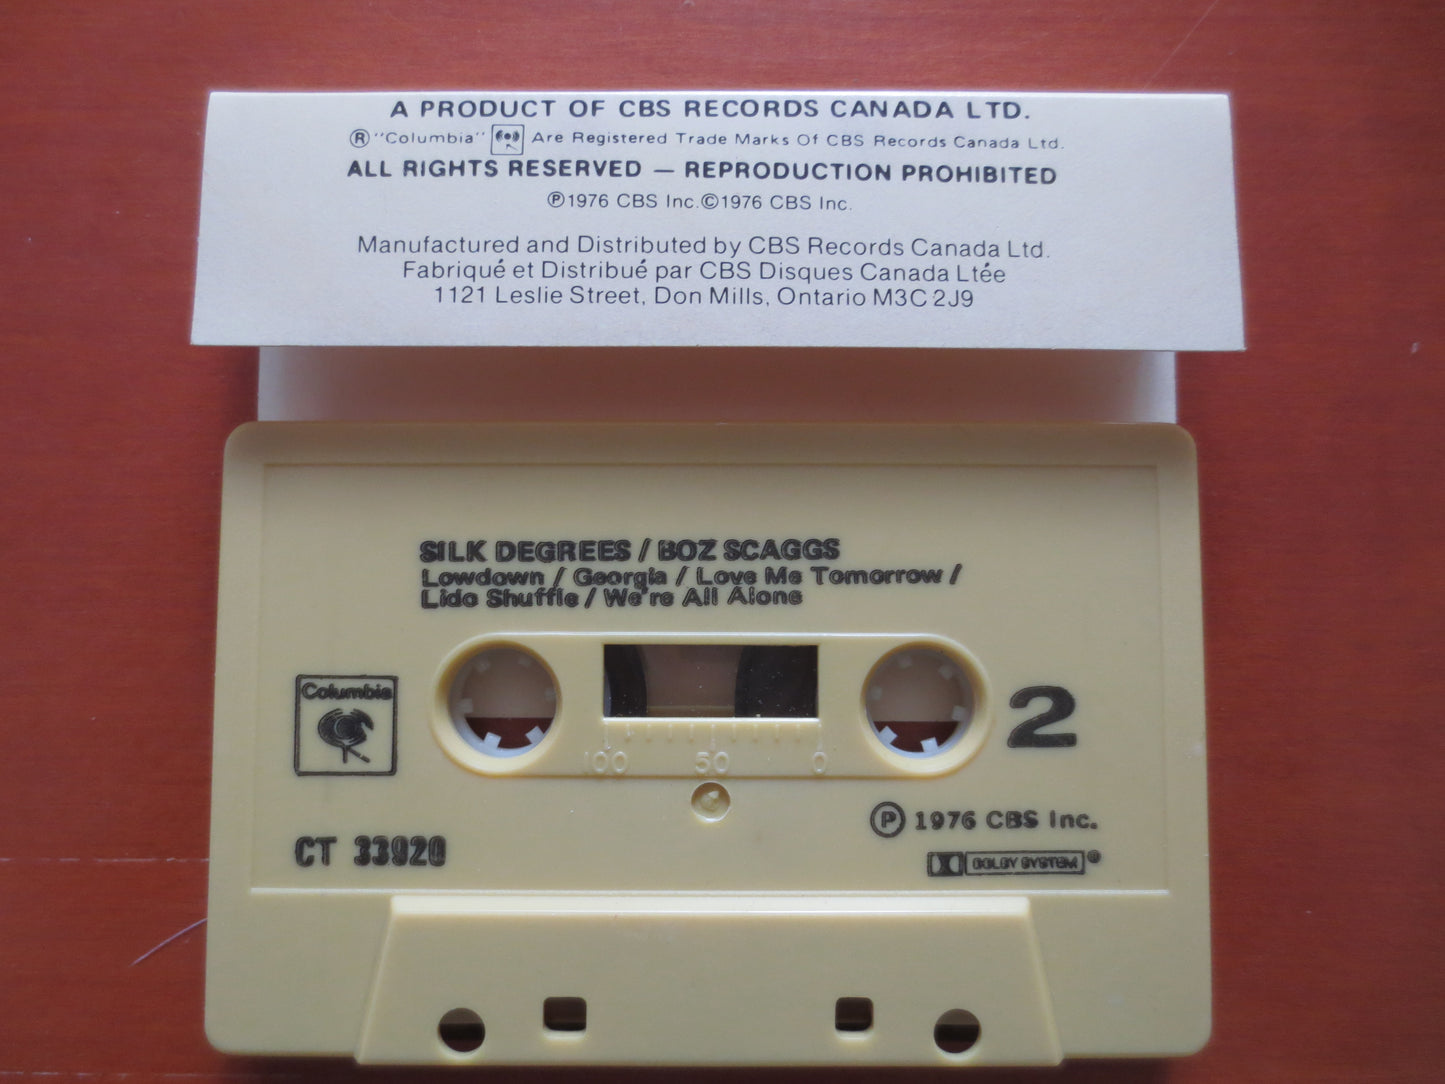 BOZ SCAGGS, SILK Degrees Album, Rock Tape, Boz Scaggs Lp, Tape Cassette, Boz Scaggs Cassette, Rock Cassette, 1976 Cassette